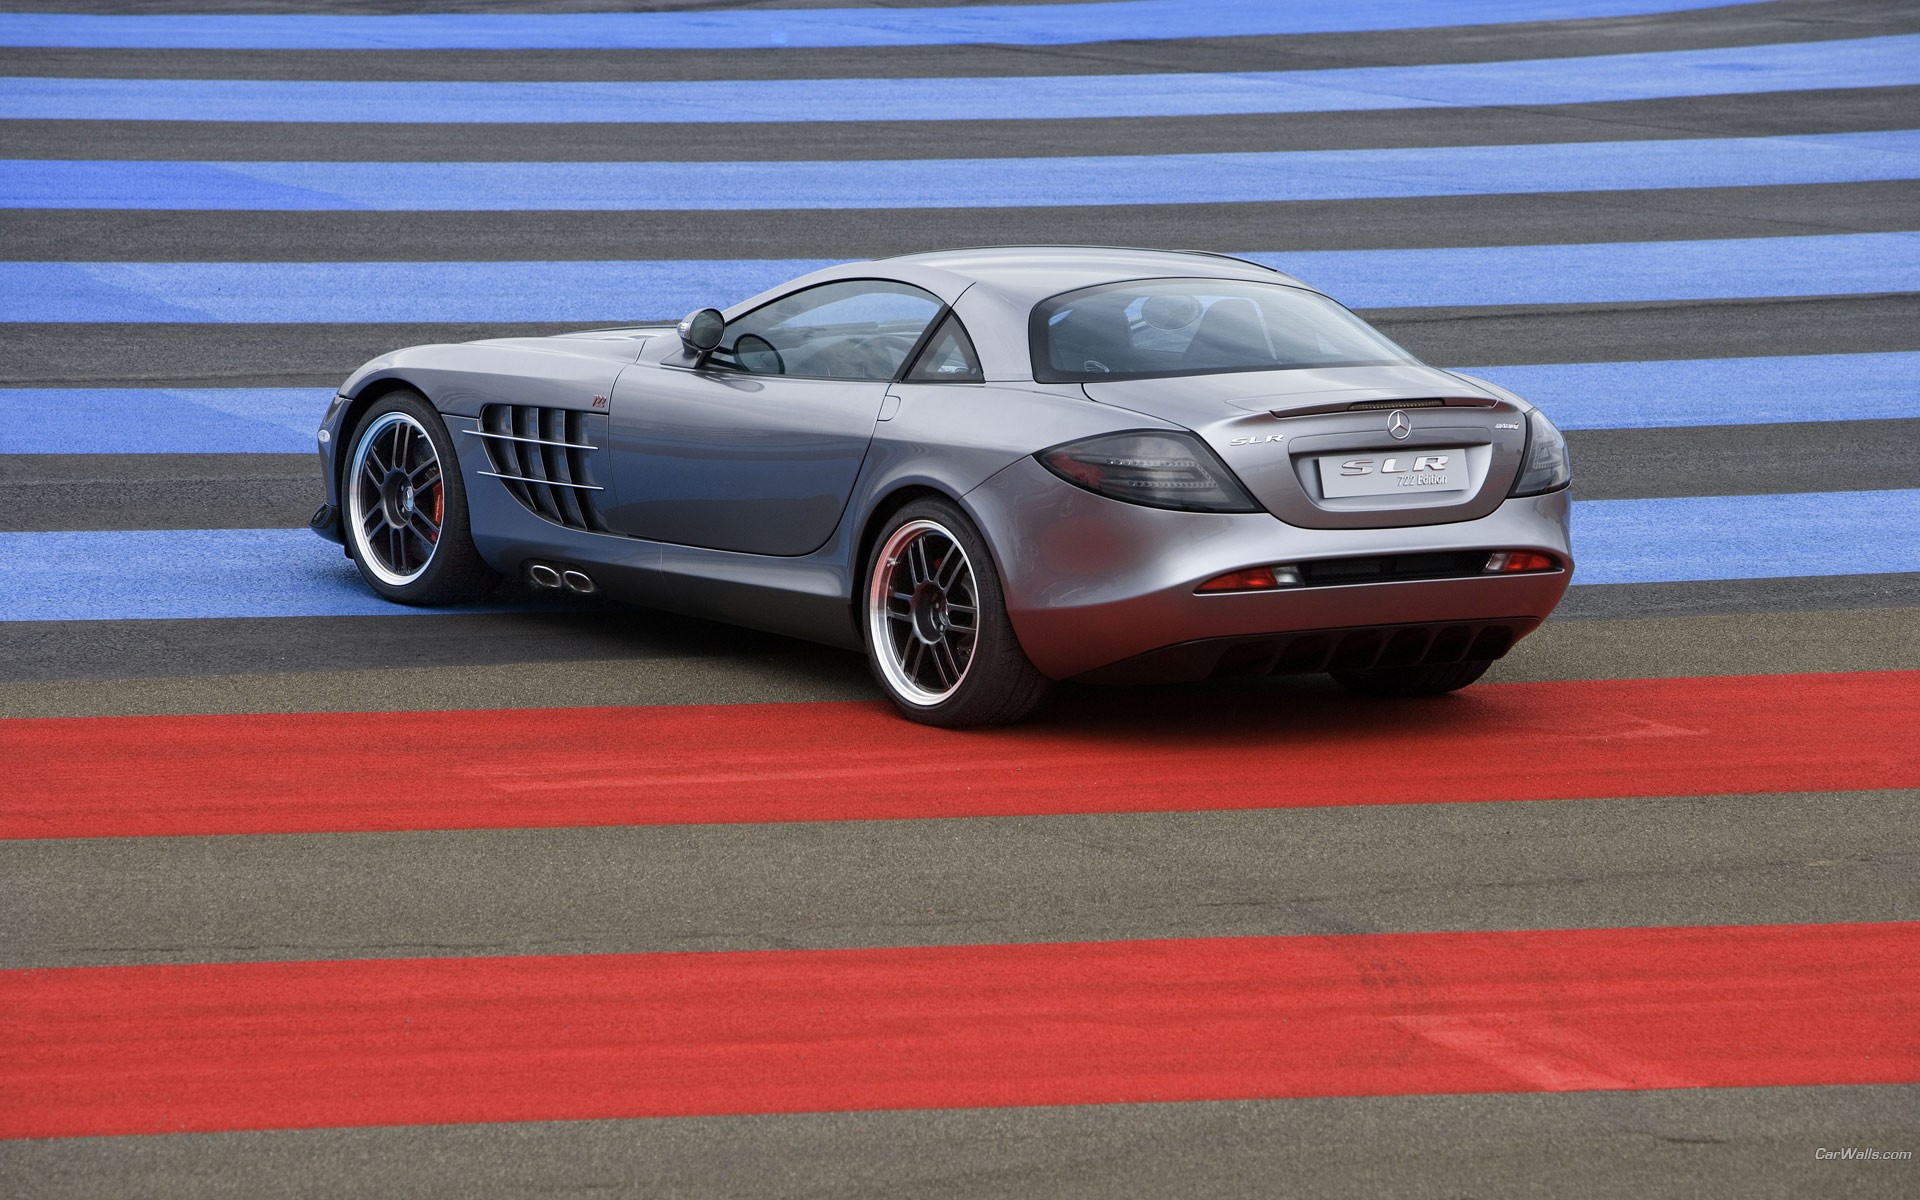 cars, Mercedes benz Wallpaper